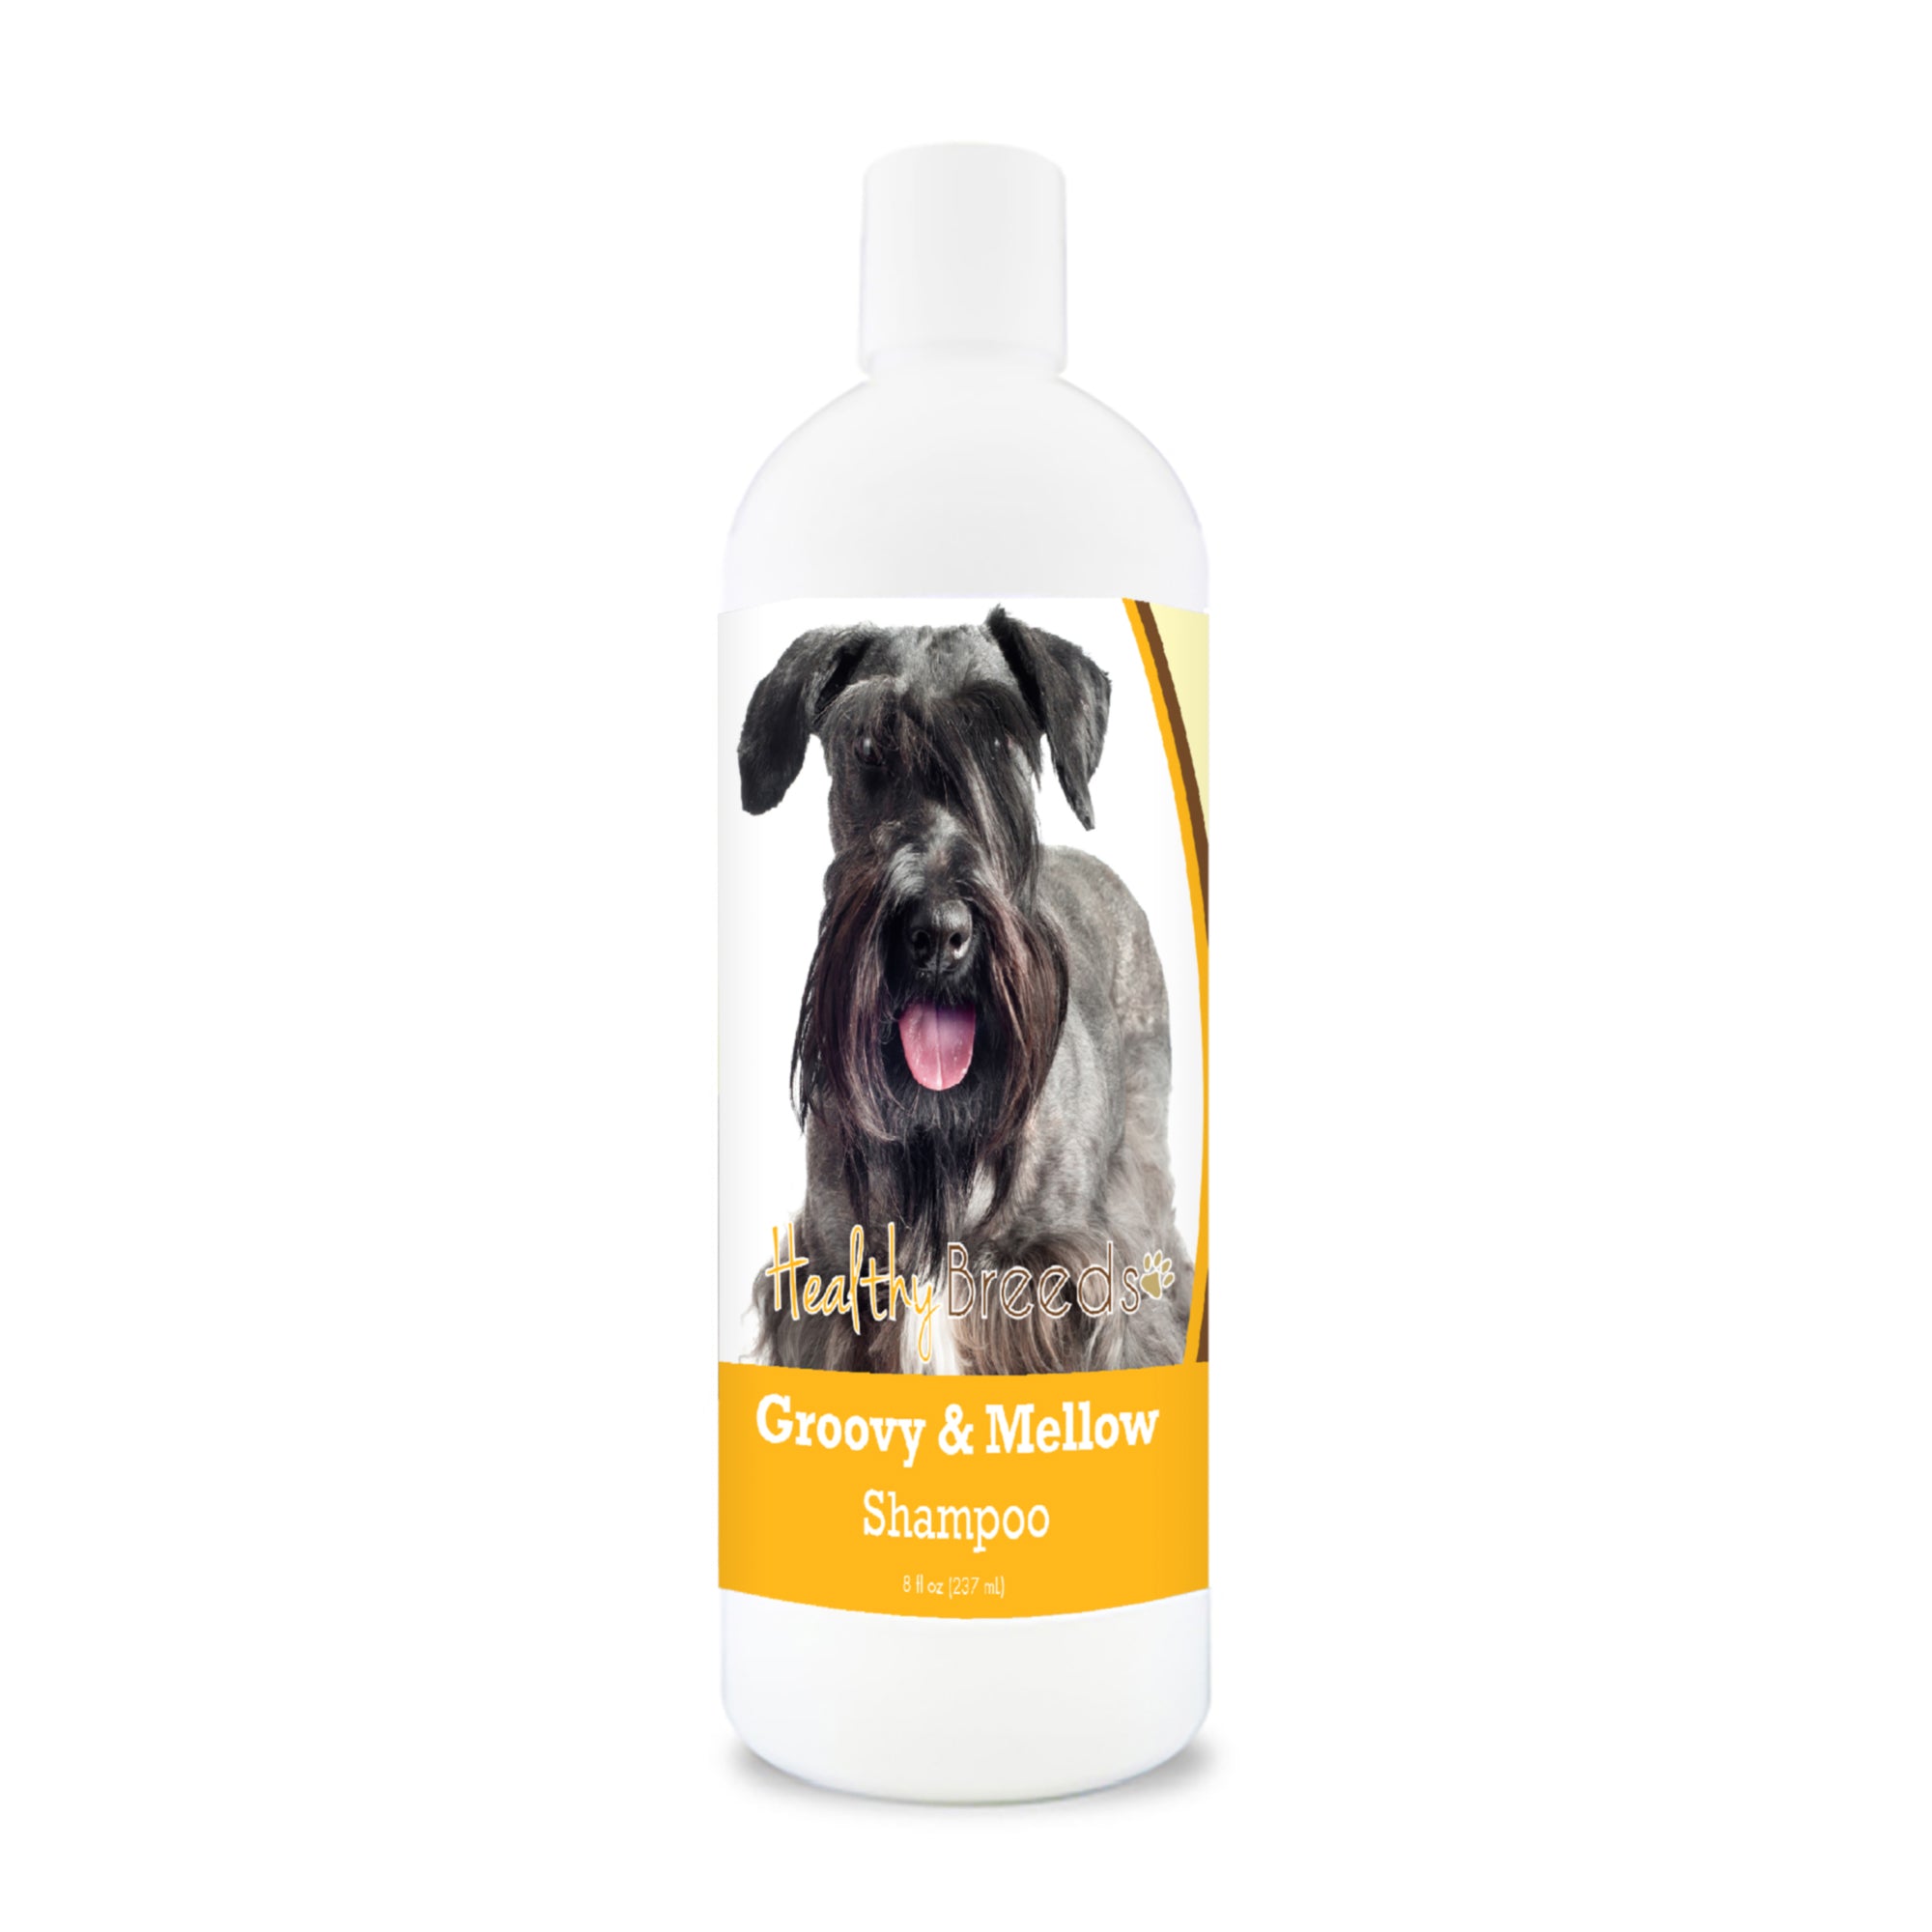 Cesky Terrier Groovy & Mellow Shampoo 8 oz